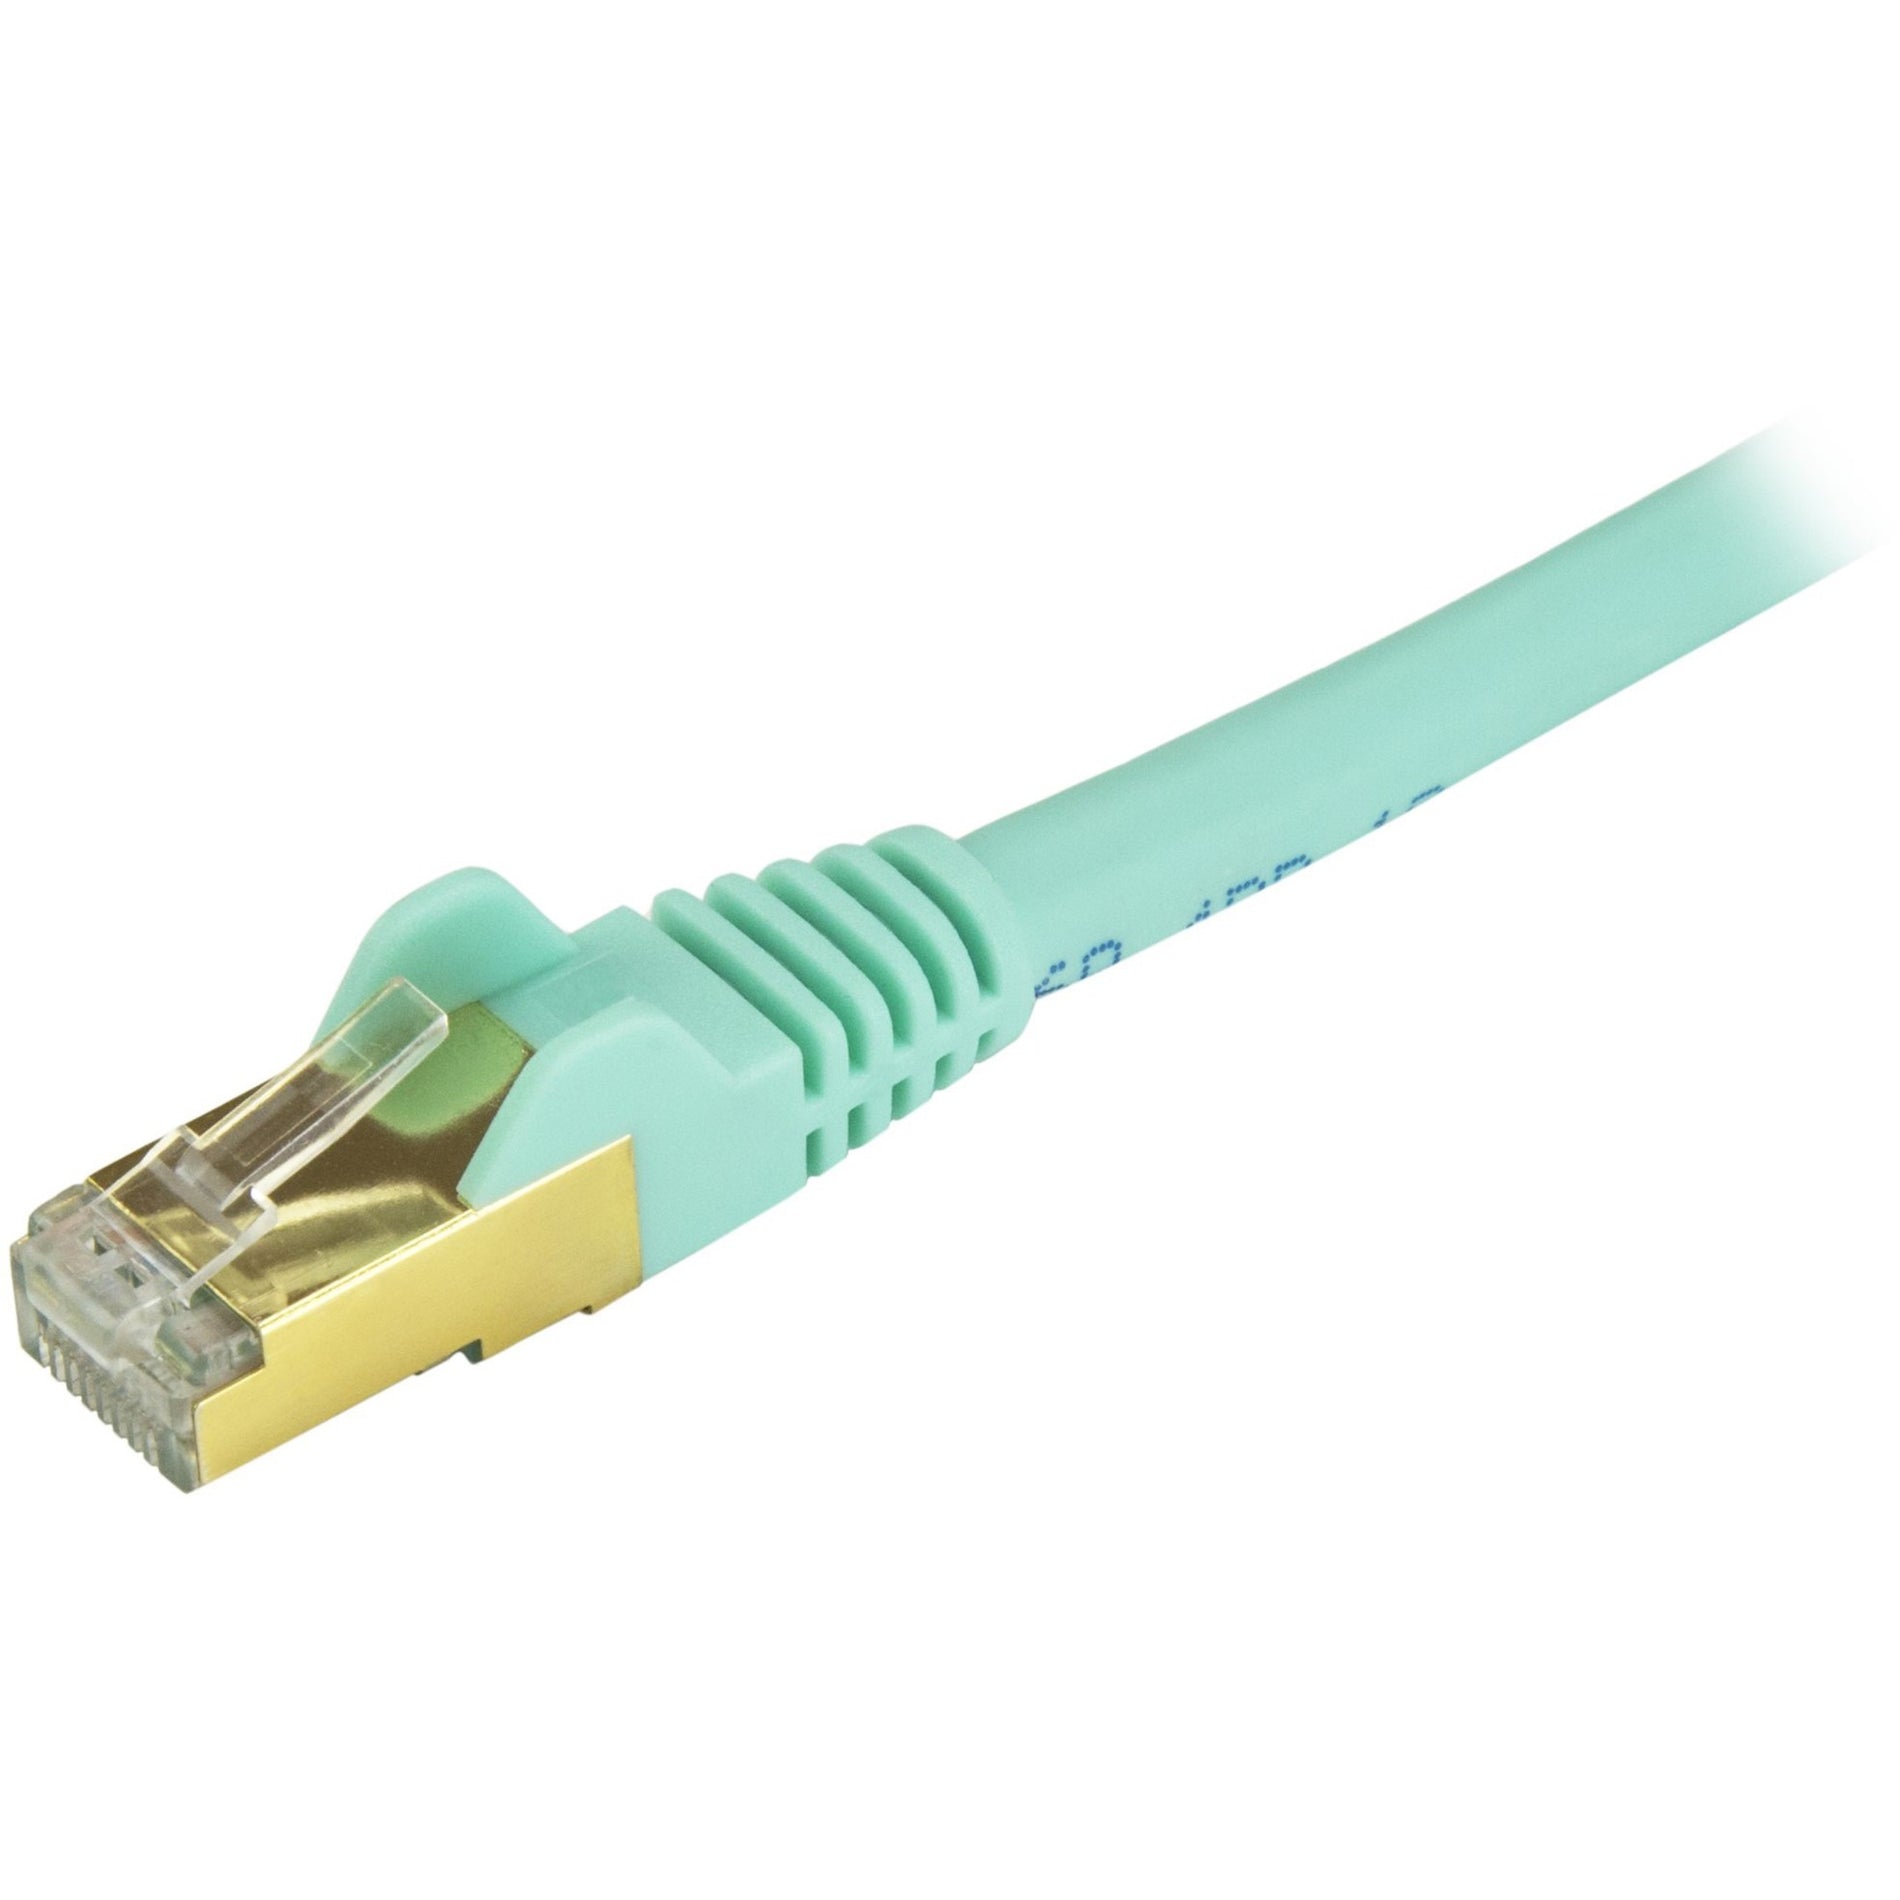 StarTech.com C6ASPAT35AQ Cat6a Ethernet Patch Cable - Shielded (STP) - 35 ft., Aqua, Long Ethernet Cord